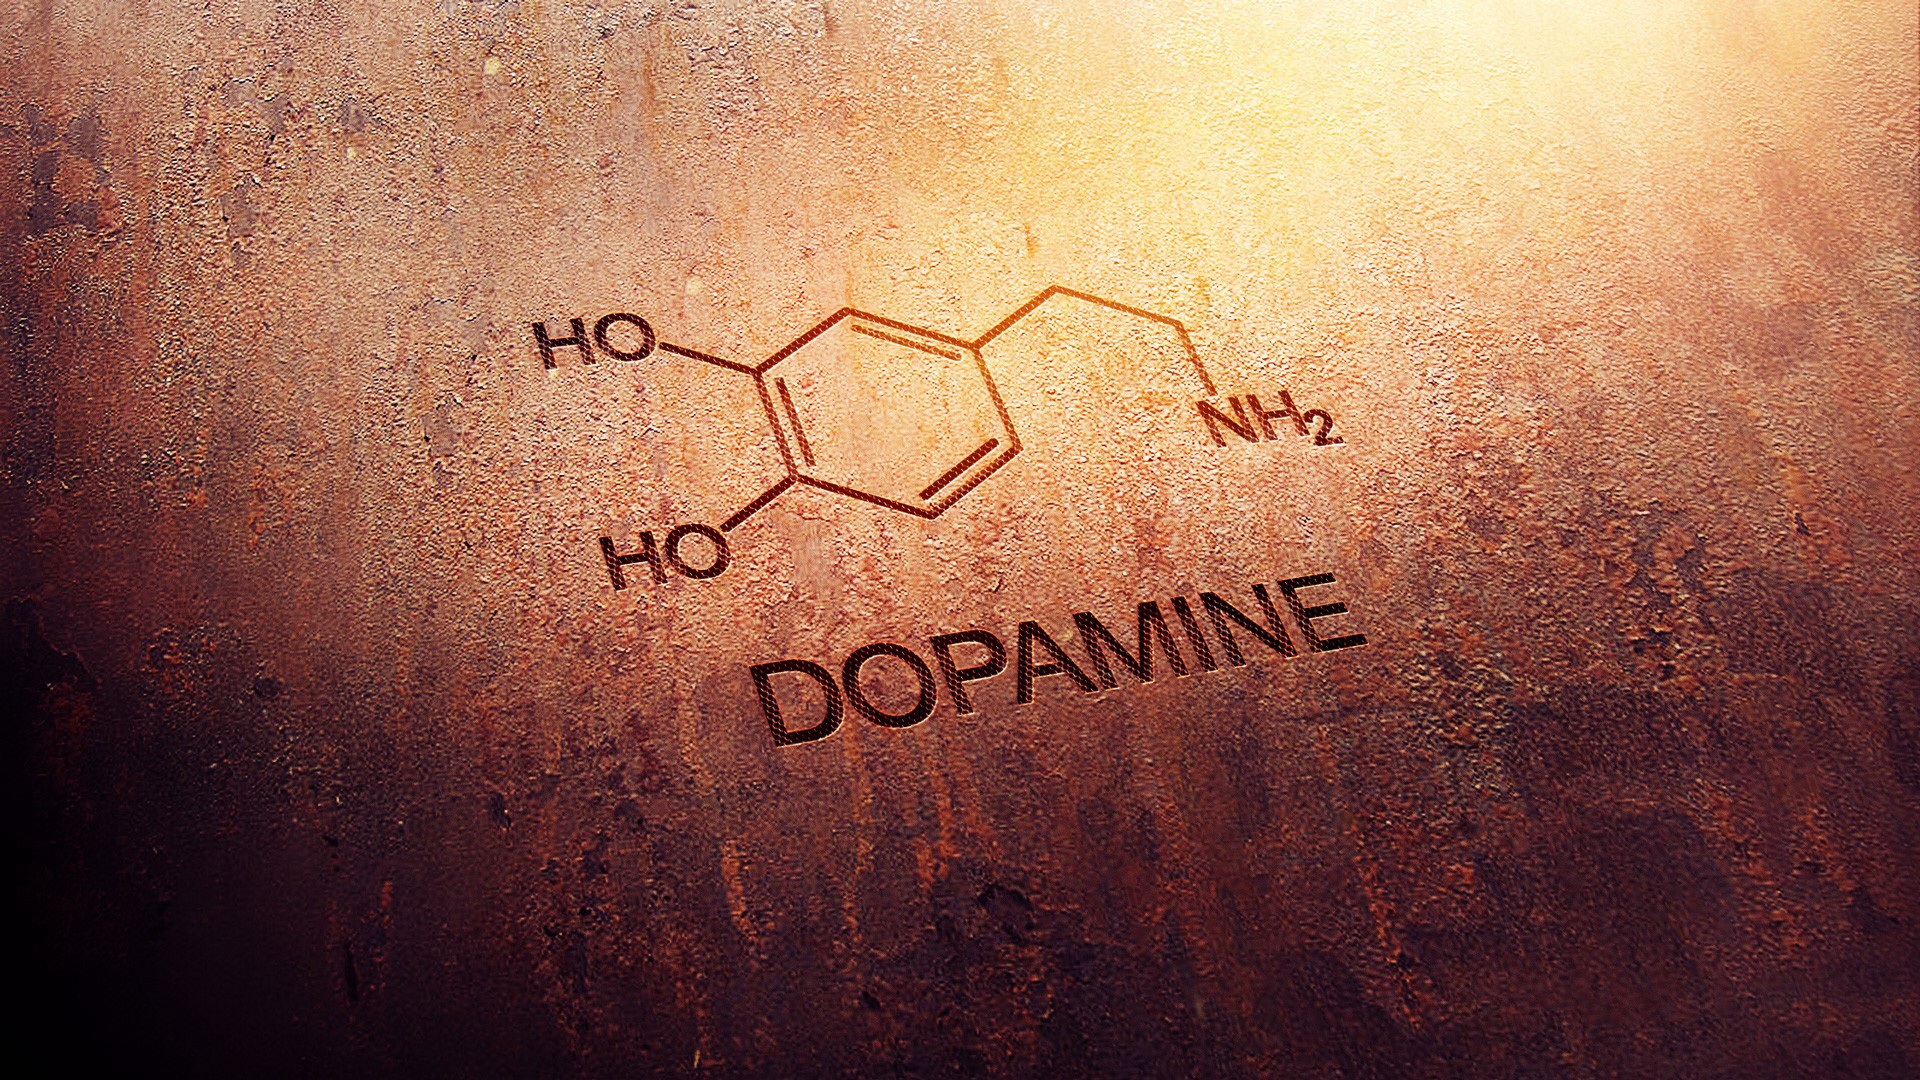 Дофаминовое поощрение в организации